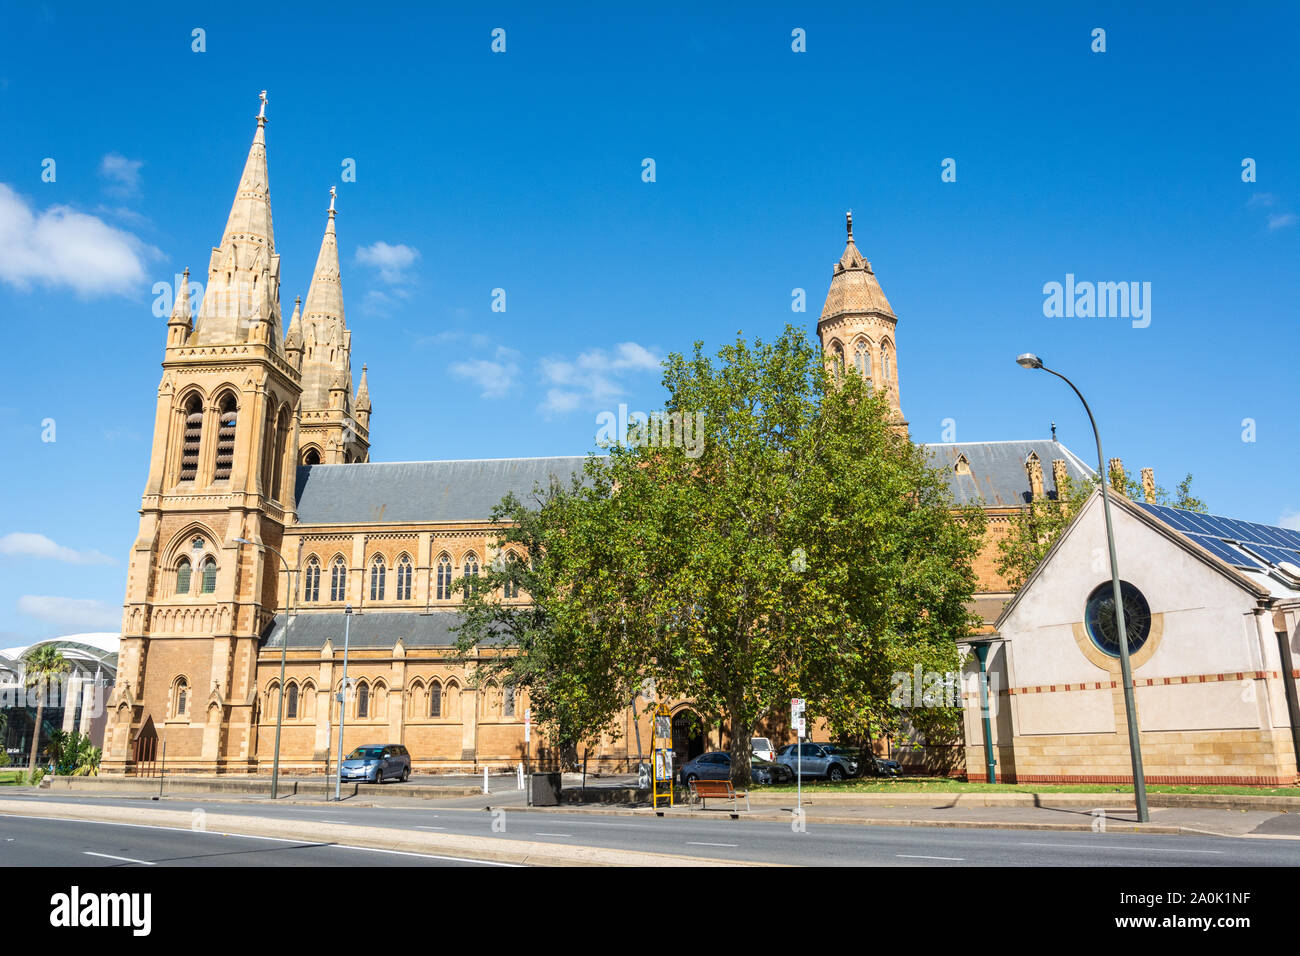 Adelaide, Australien - 16. März 2017. Außenansicht der St. Peter's Cathedral in Adelaide an der Ecke Pennington Terrace und King William Road Stockfoto